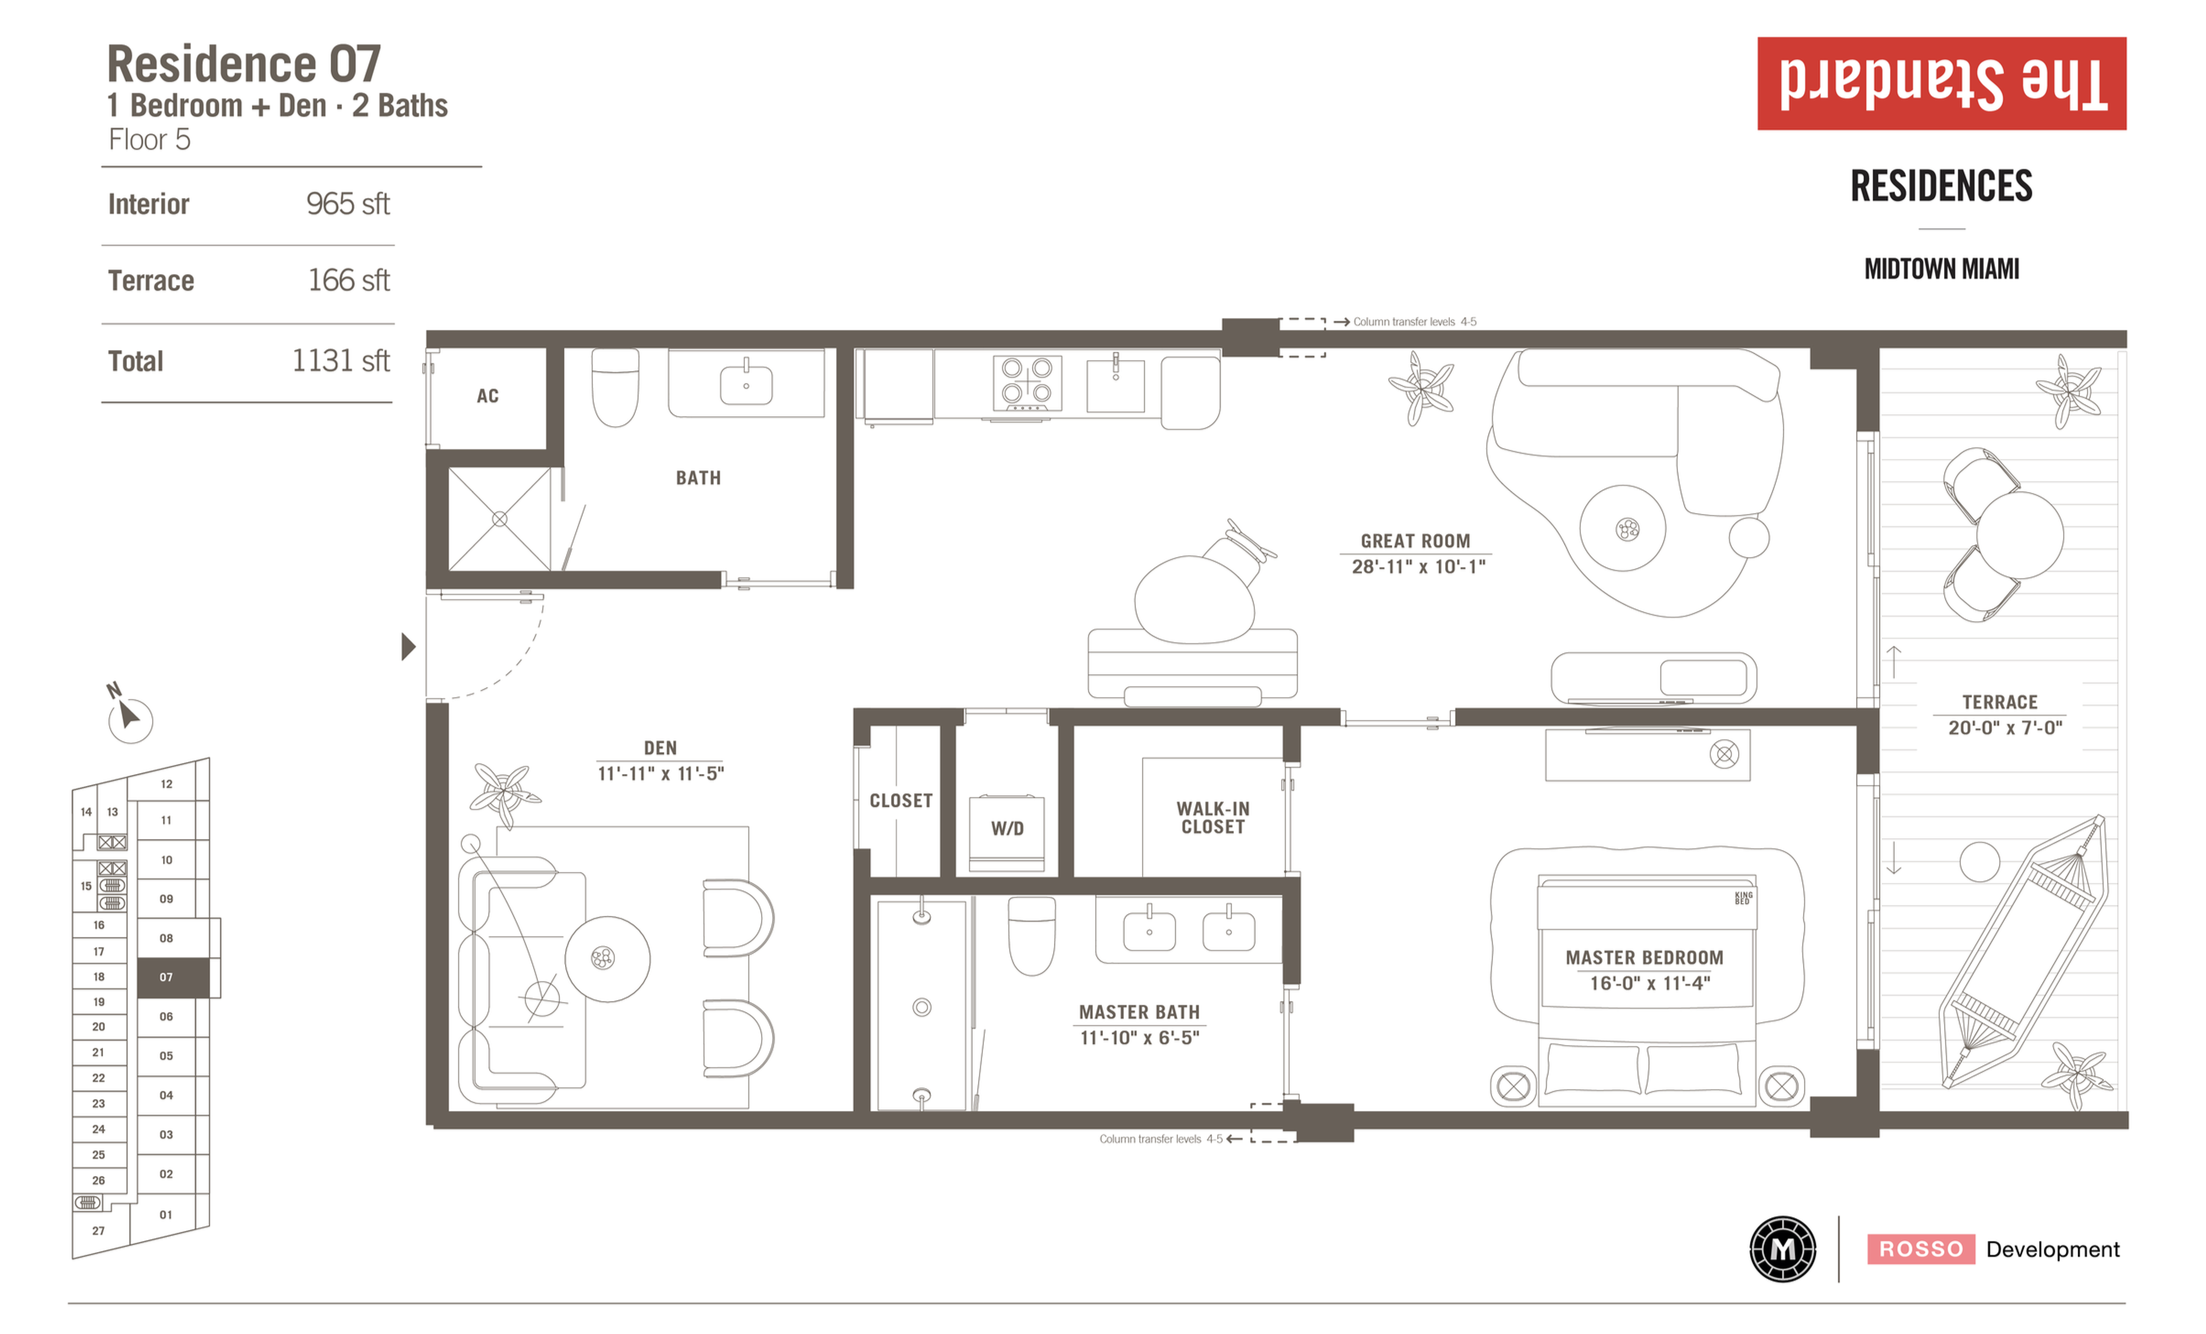 The Standard Residences | Residence 07 |  1 Be + den/2 Ba | 965 SF | Floor 5